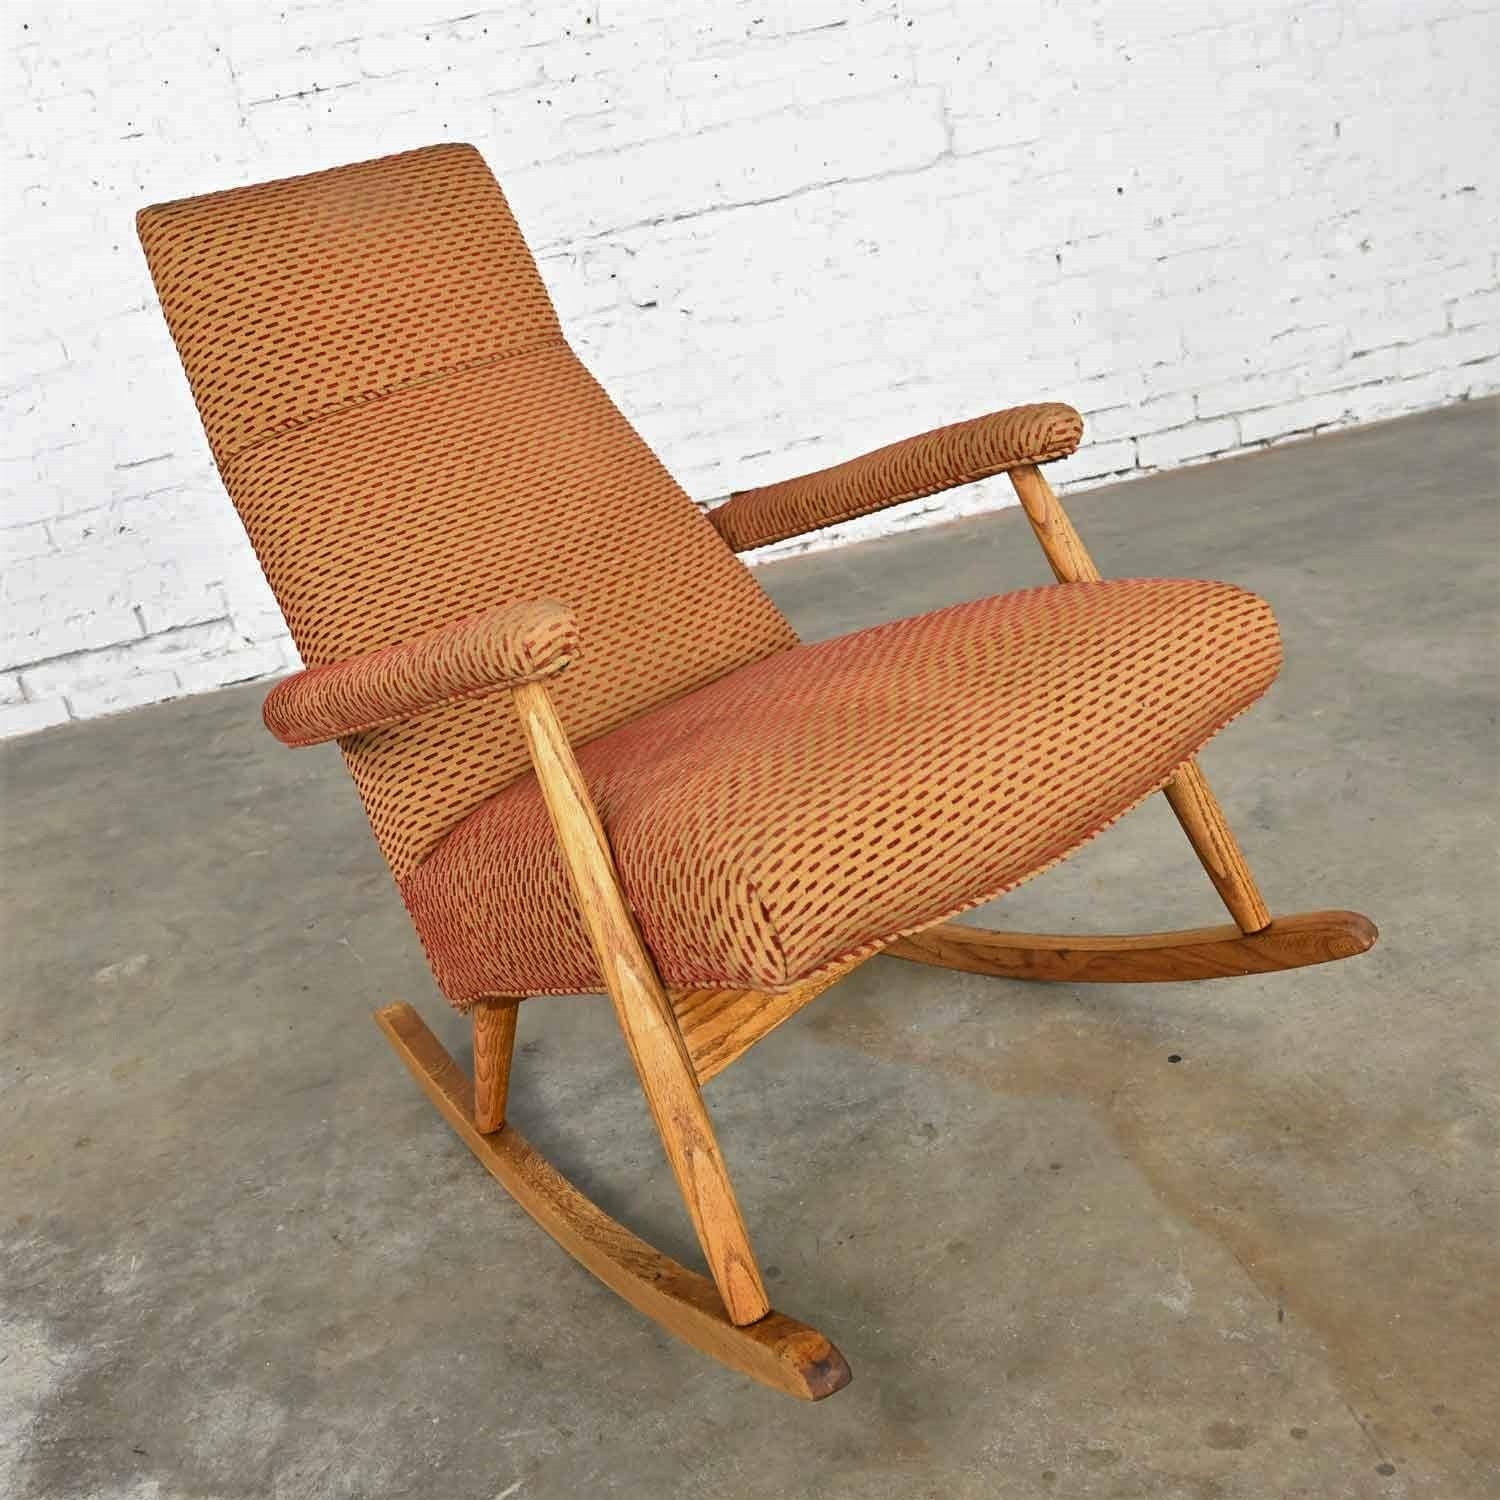 Joli fauteuil à haut dossier de style moderne du milieu du siècle, composé d'un cadre en chêne et du tissu chenille d'origine, rouille et or. Ce fauteuil à bascule est en très bon état, tout en gardant à l'esprit qu'il s'agit d'un modèle vintage et